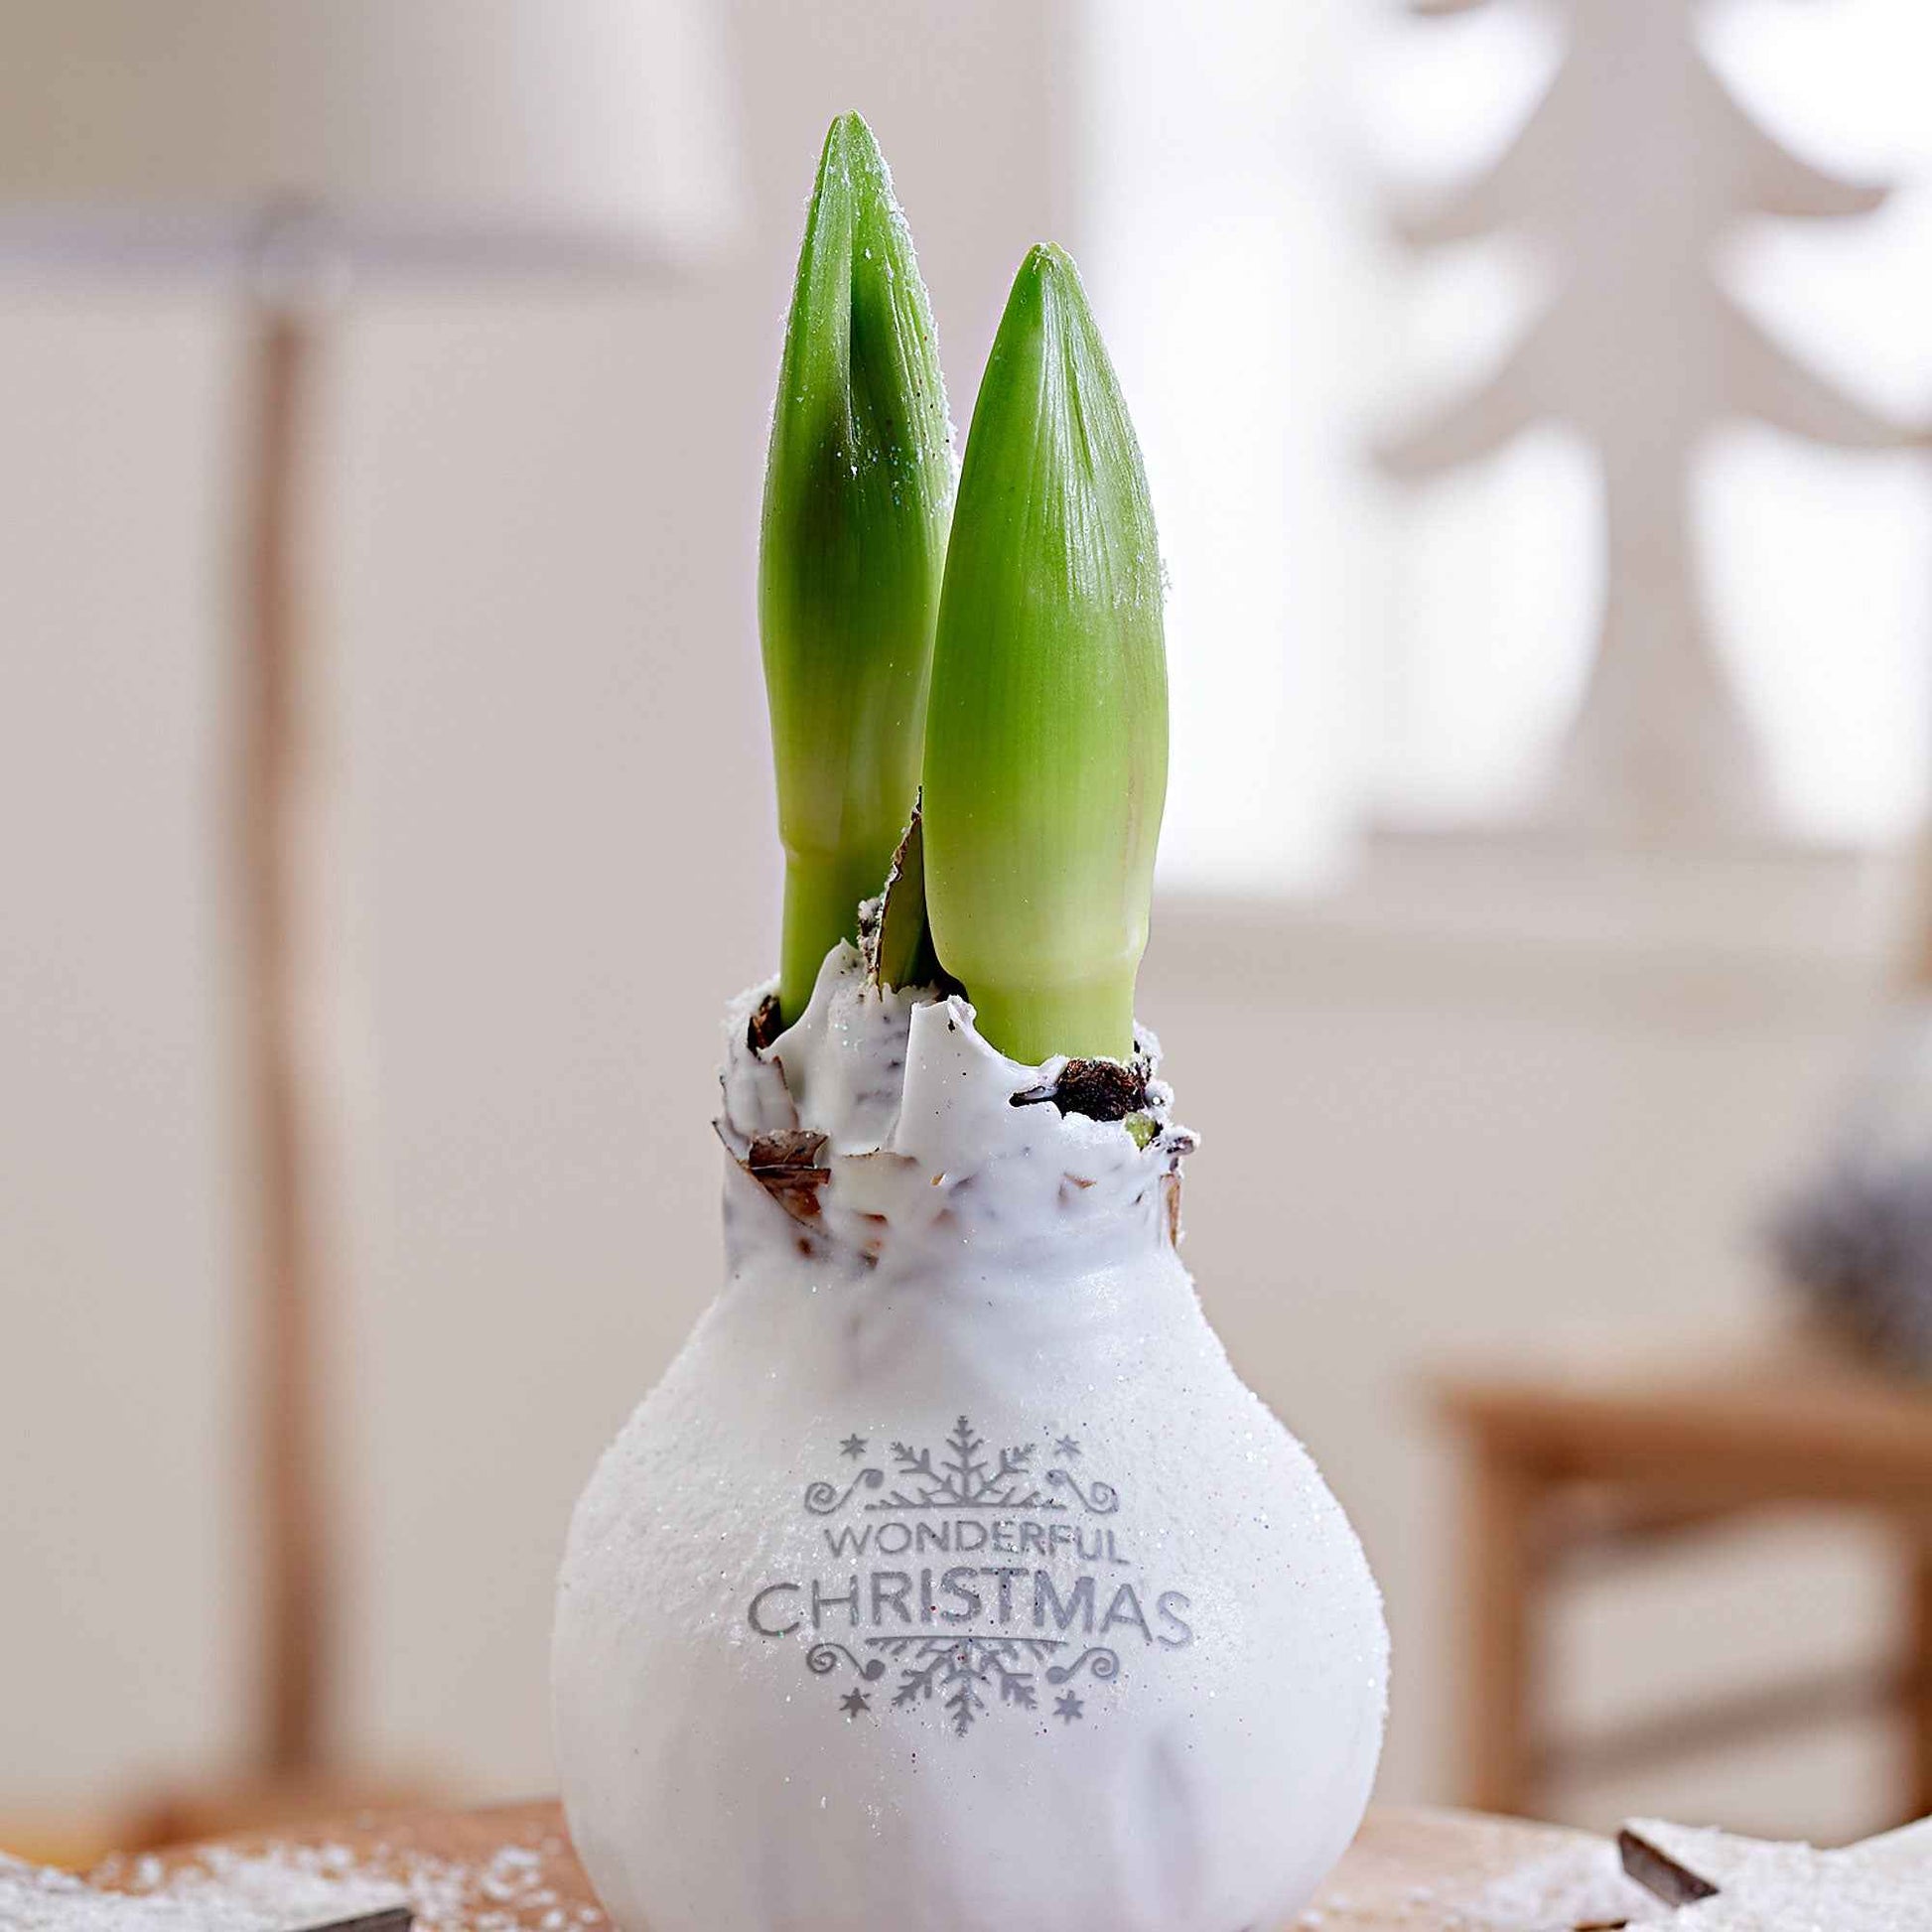 Amaryllis 'Wonderful X-mas' Blanc - Bulbes de fleurs populaires